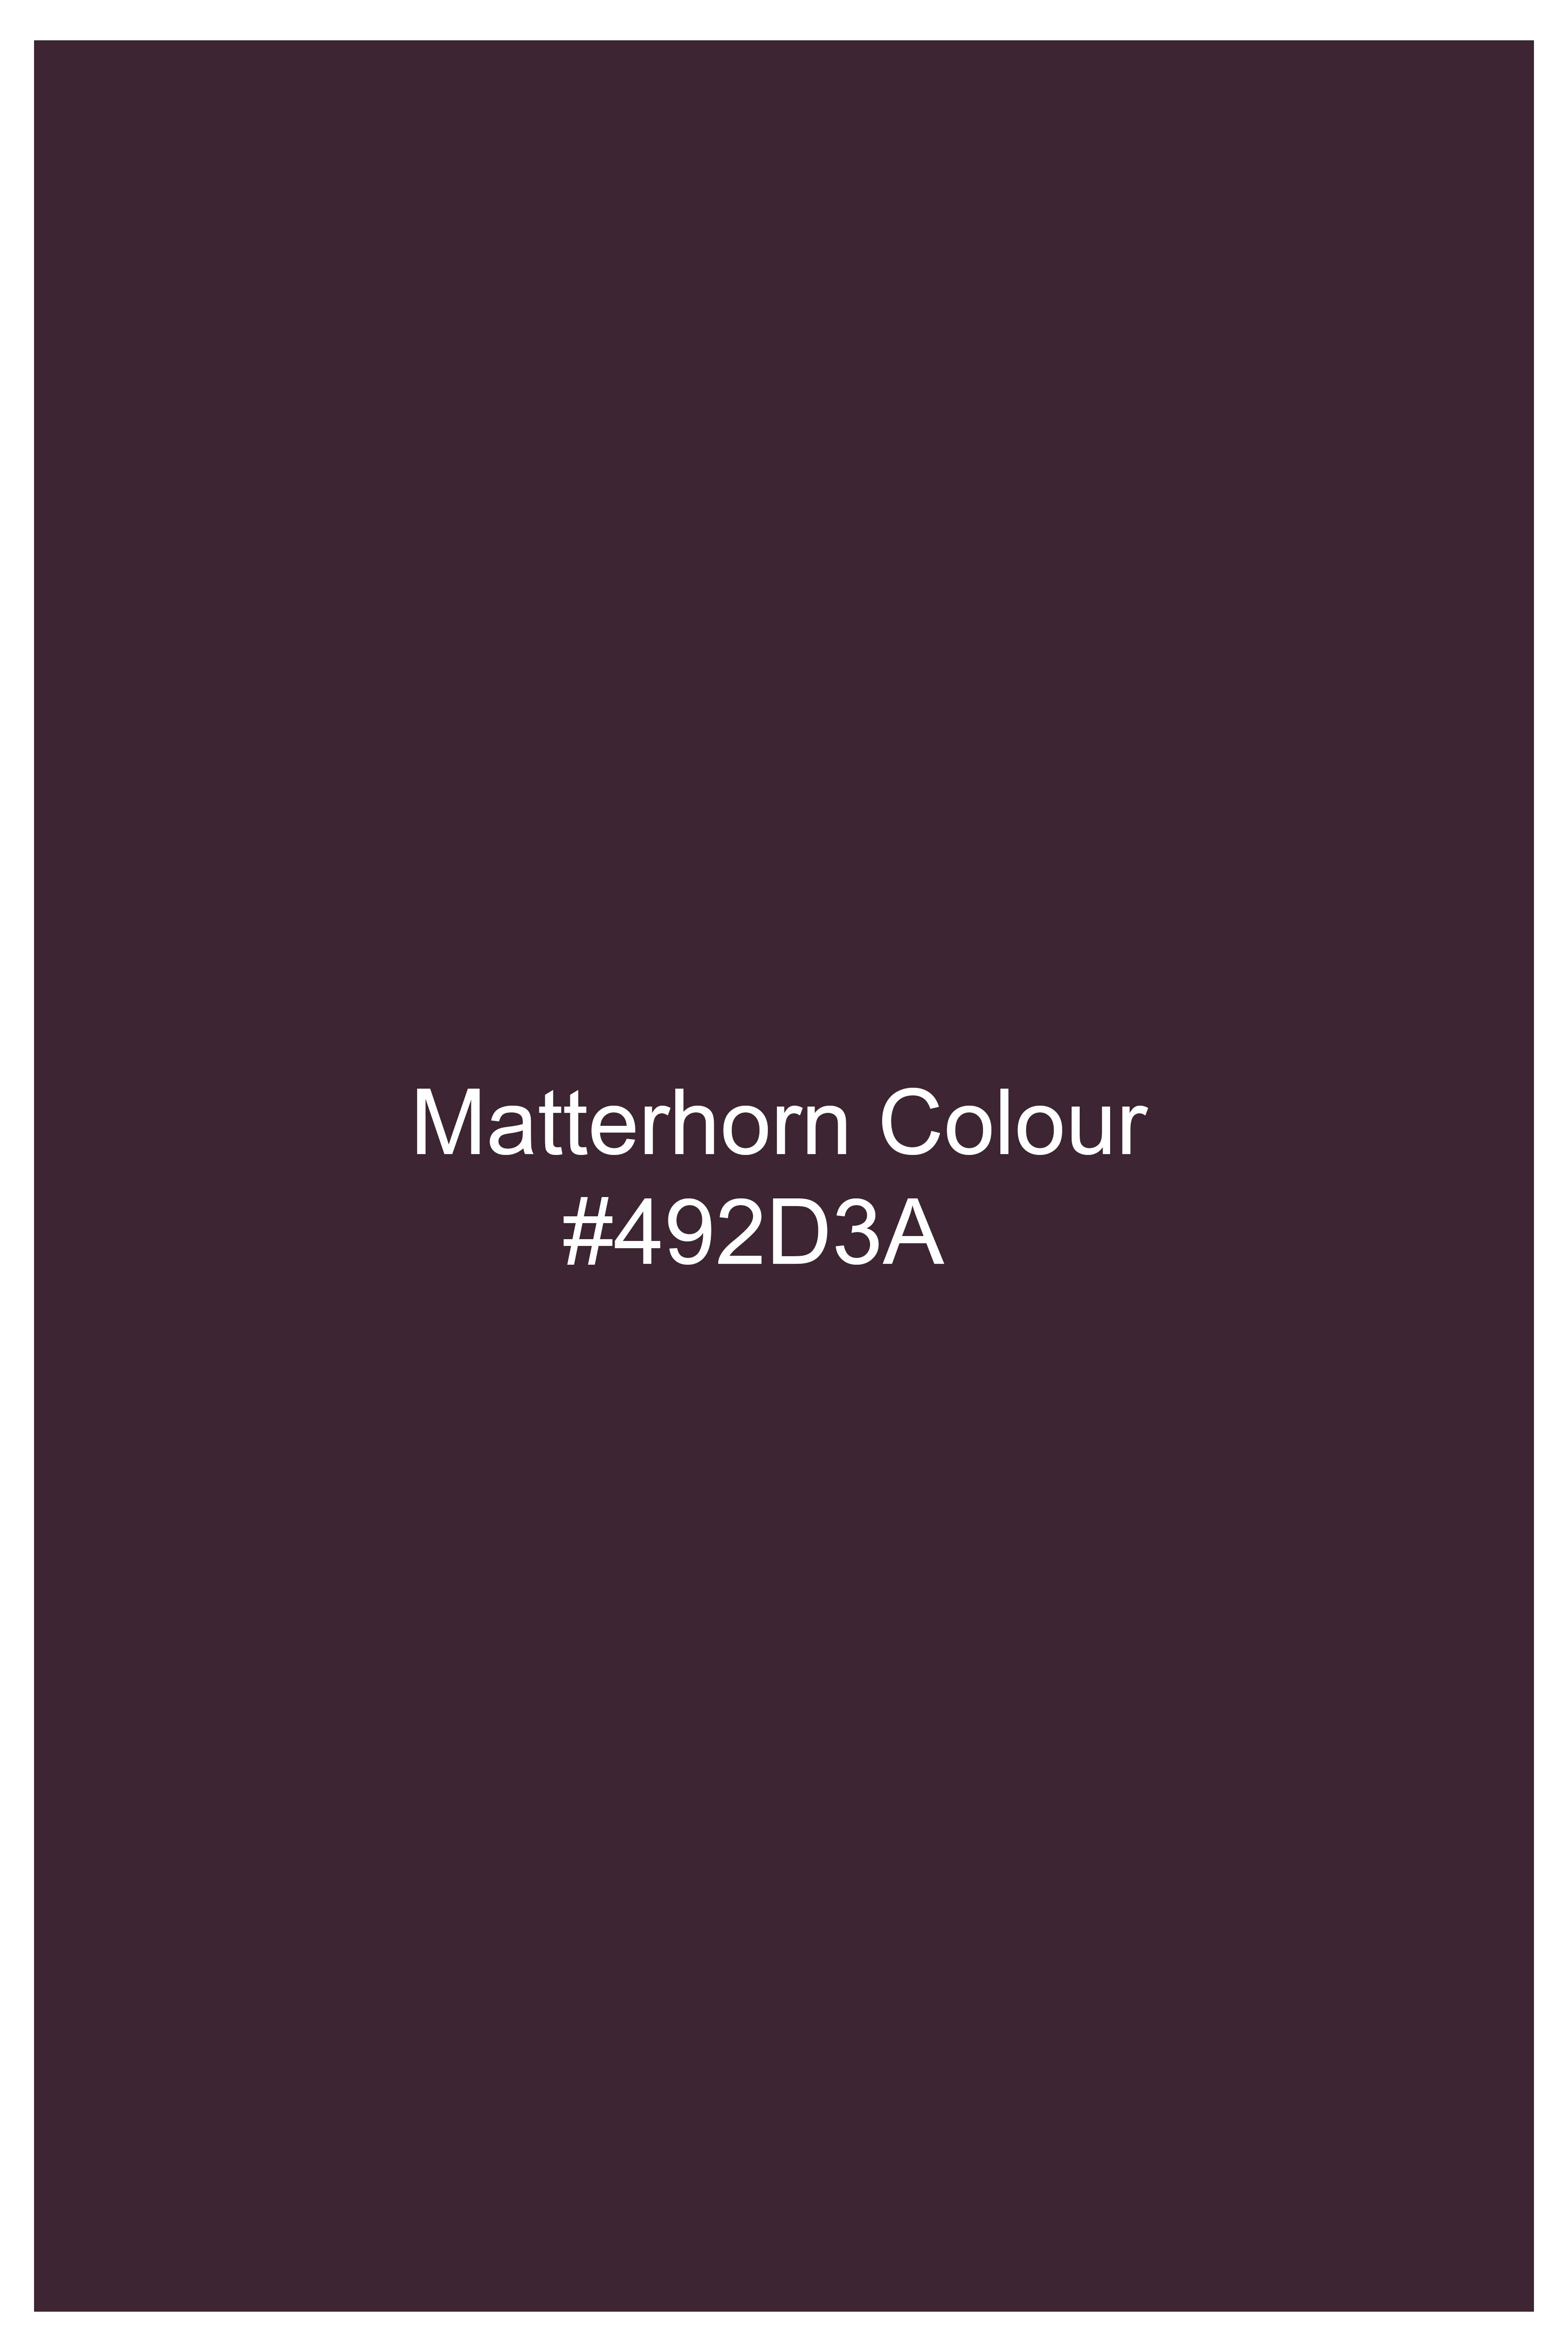 Matterhorn Maroon Wool Rich Designer Suit ST2755-BG-D172-36,ST2755-BG-D172-38,ST2755-BG-D172-40,ST2755-BG-D172-42,ST2755-BG-D172-44,ST2755-BG-D172-46,ST2755-BG-D172-48,ST2755-BG-D172-50,ST2755-BG-D172-52,ST2755-BG-D172-54,ST2755-BG-D172-56,ST2755-BG-D172-58,ST2755-BG-D172-60